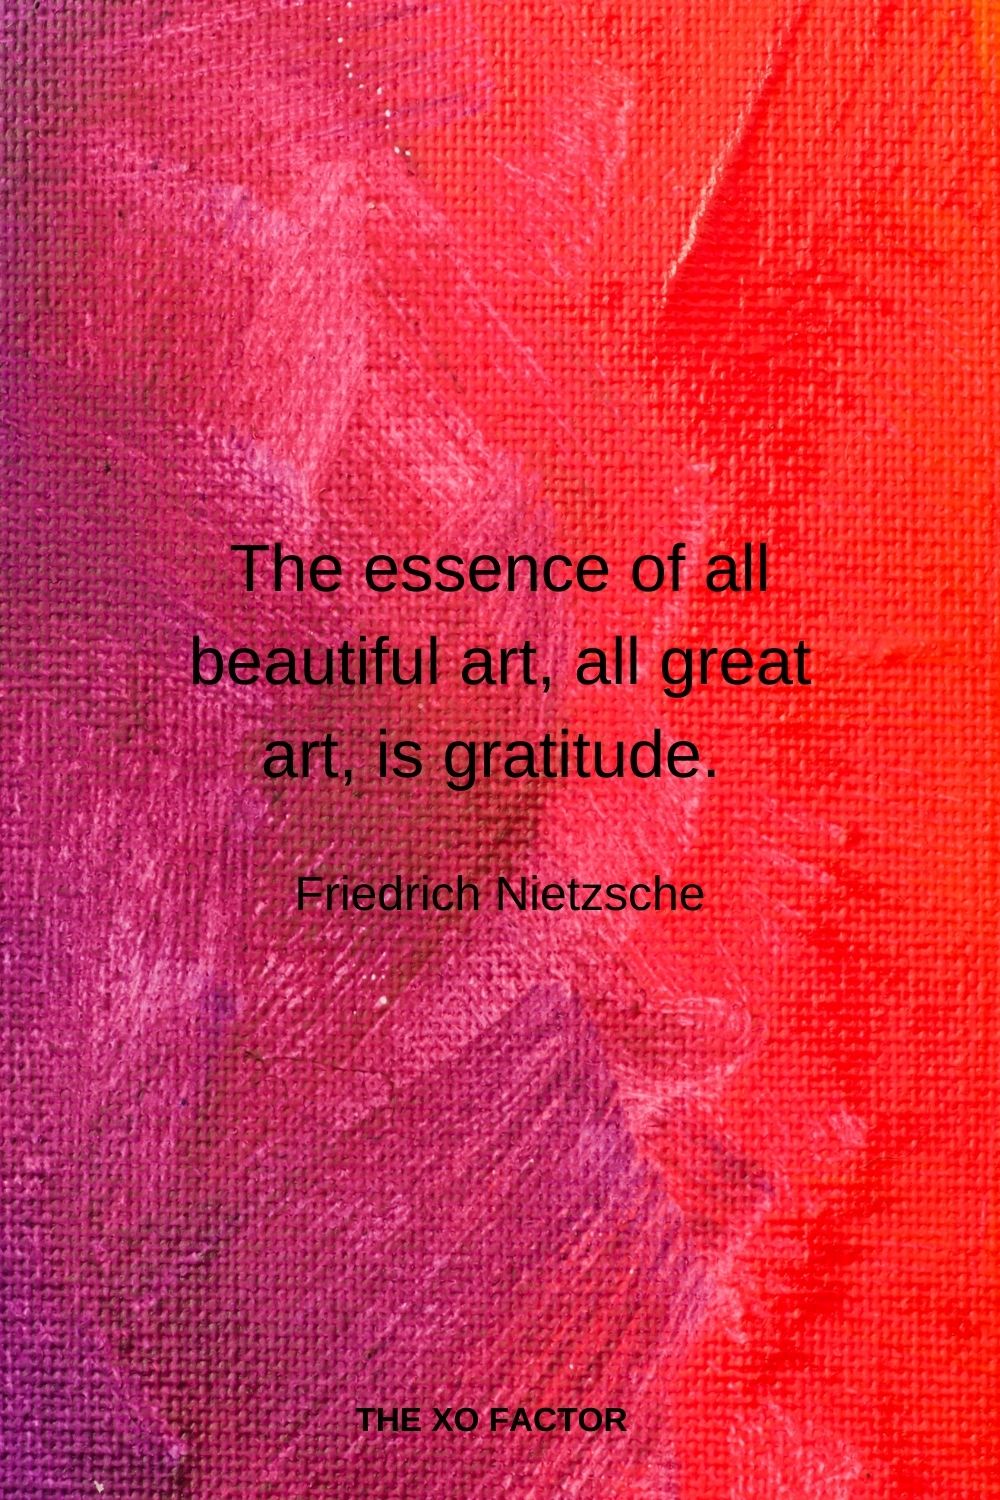 The essence of all beautiful art, all great art, is gratitude. Friedrich Nietzsche